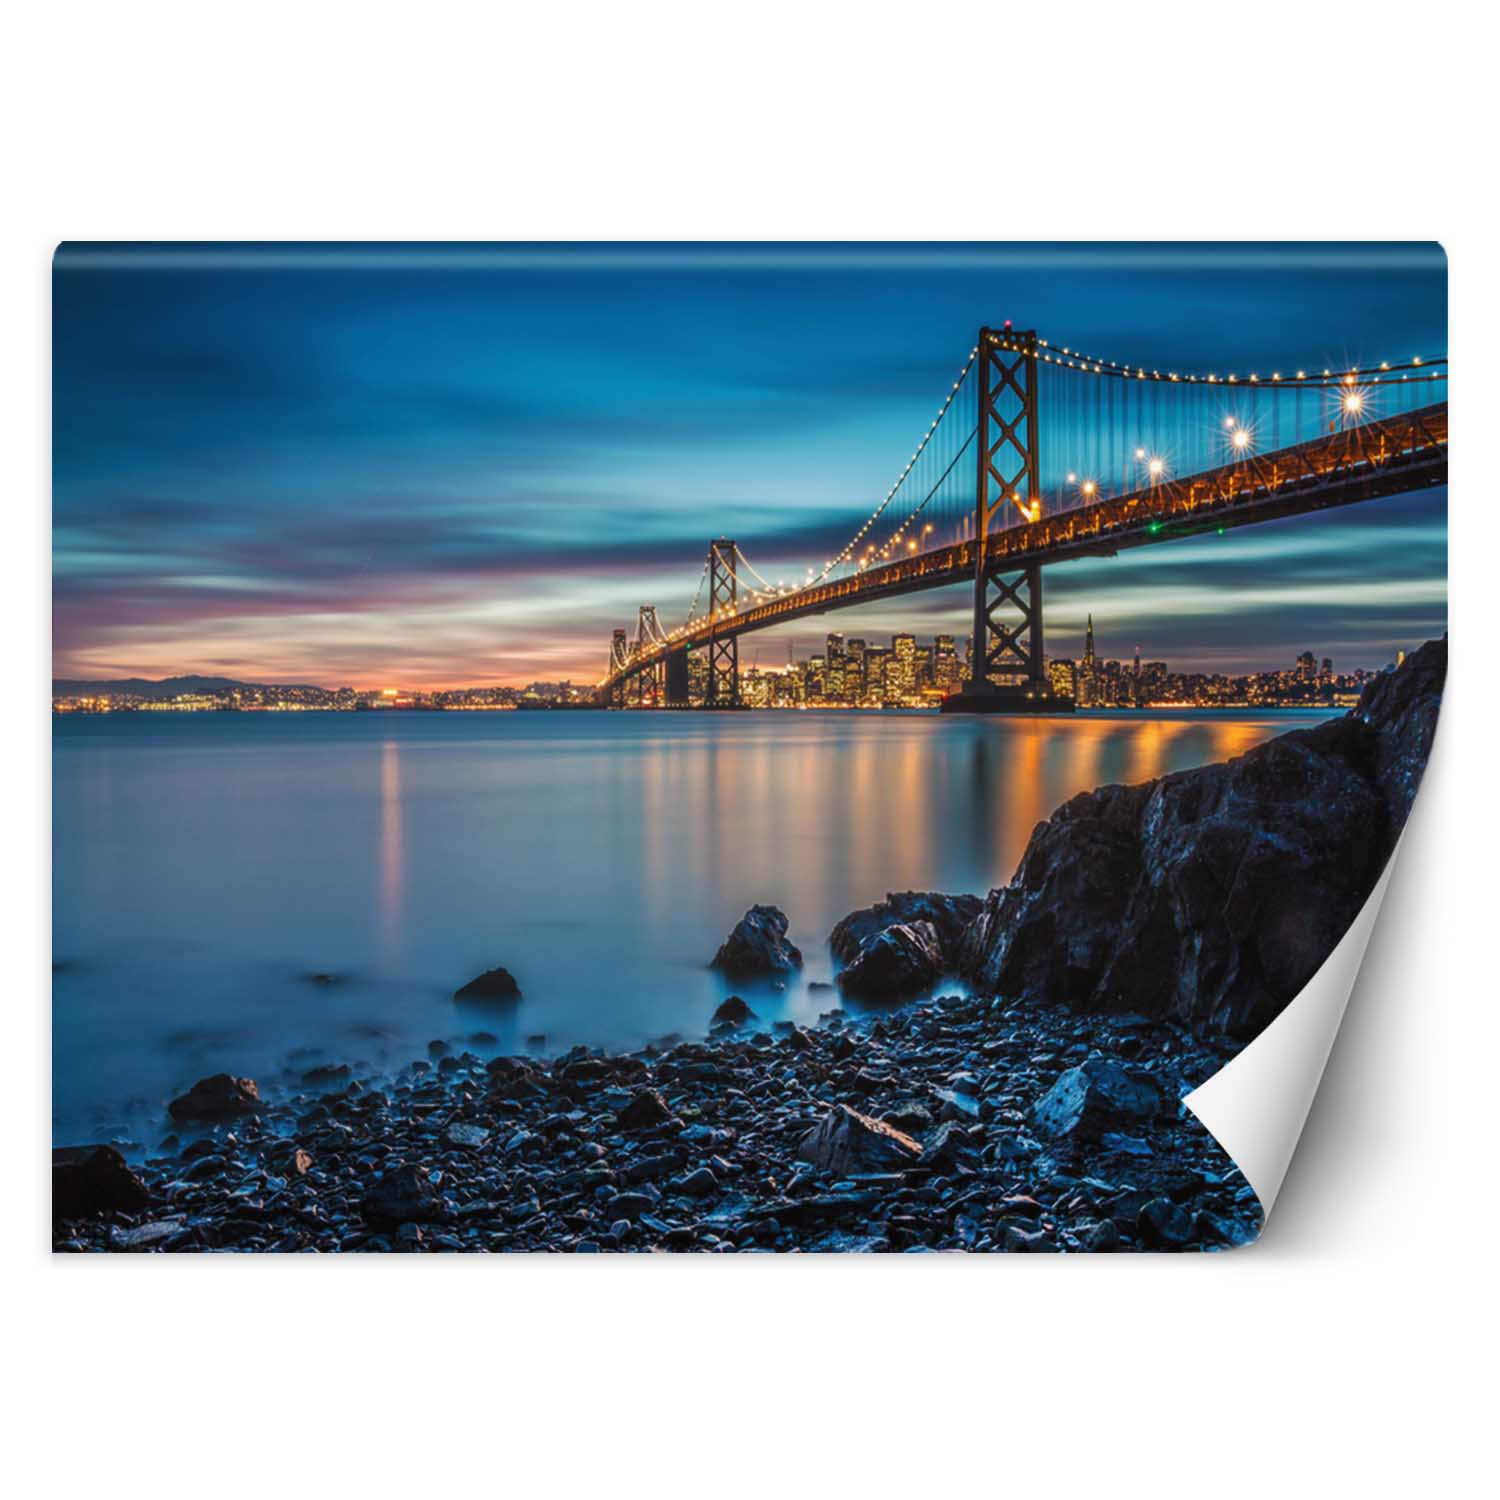 Trend24 – Behang – Brug Naar San Francisco – Behangpapier – Fotobehang – Behang Woonkamer – 450x315x2 cm – Incl. behanglijm